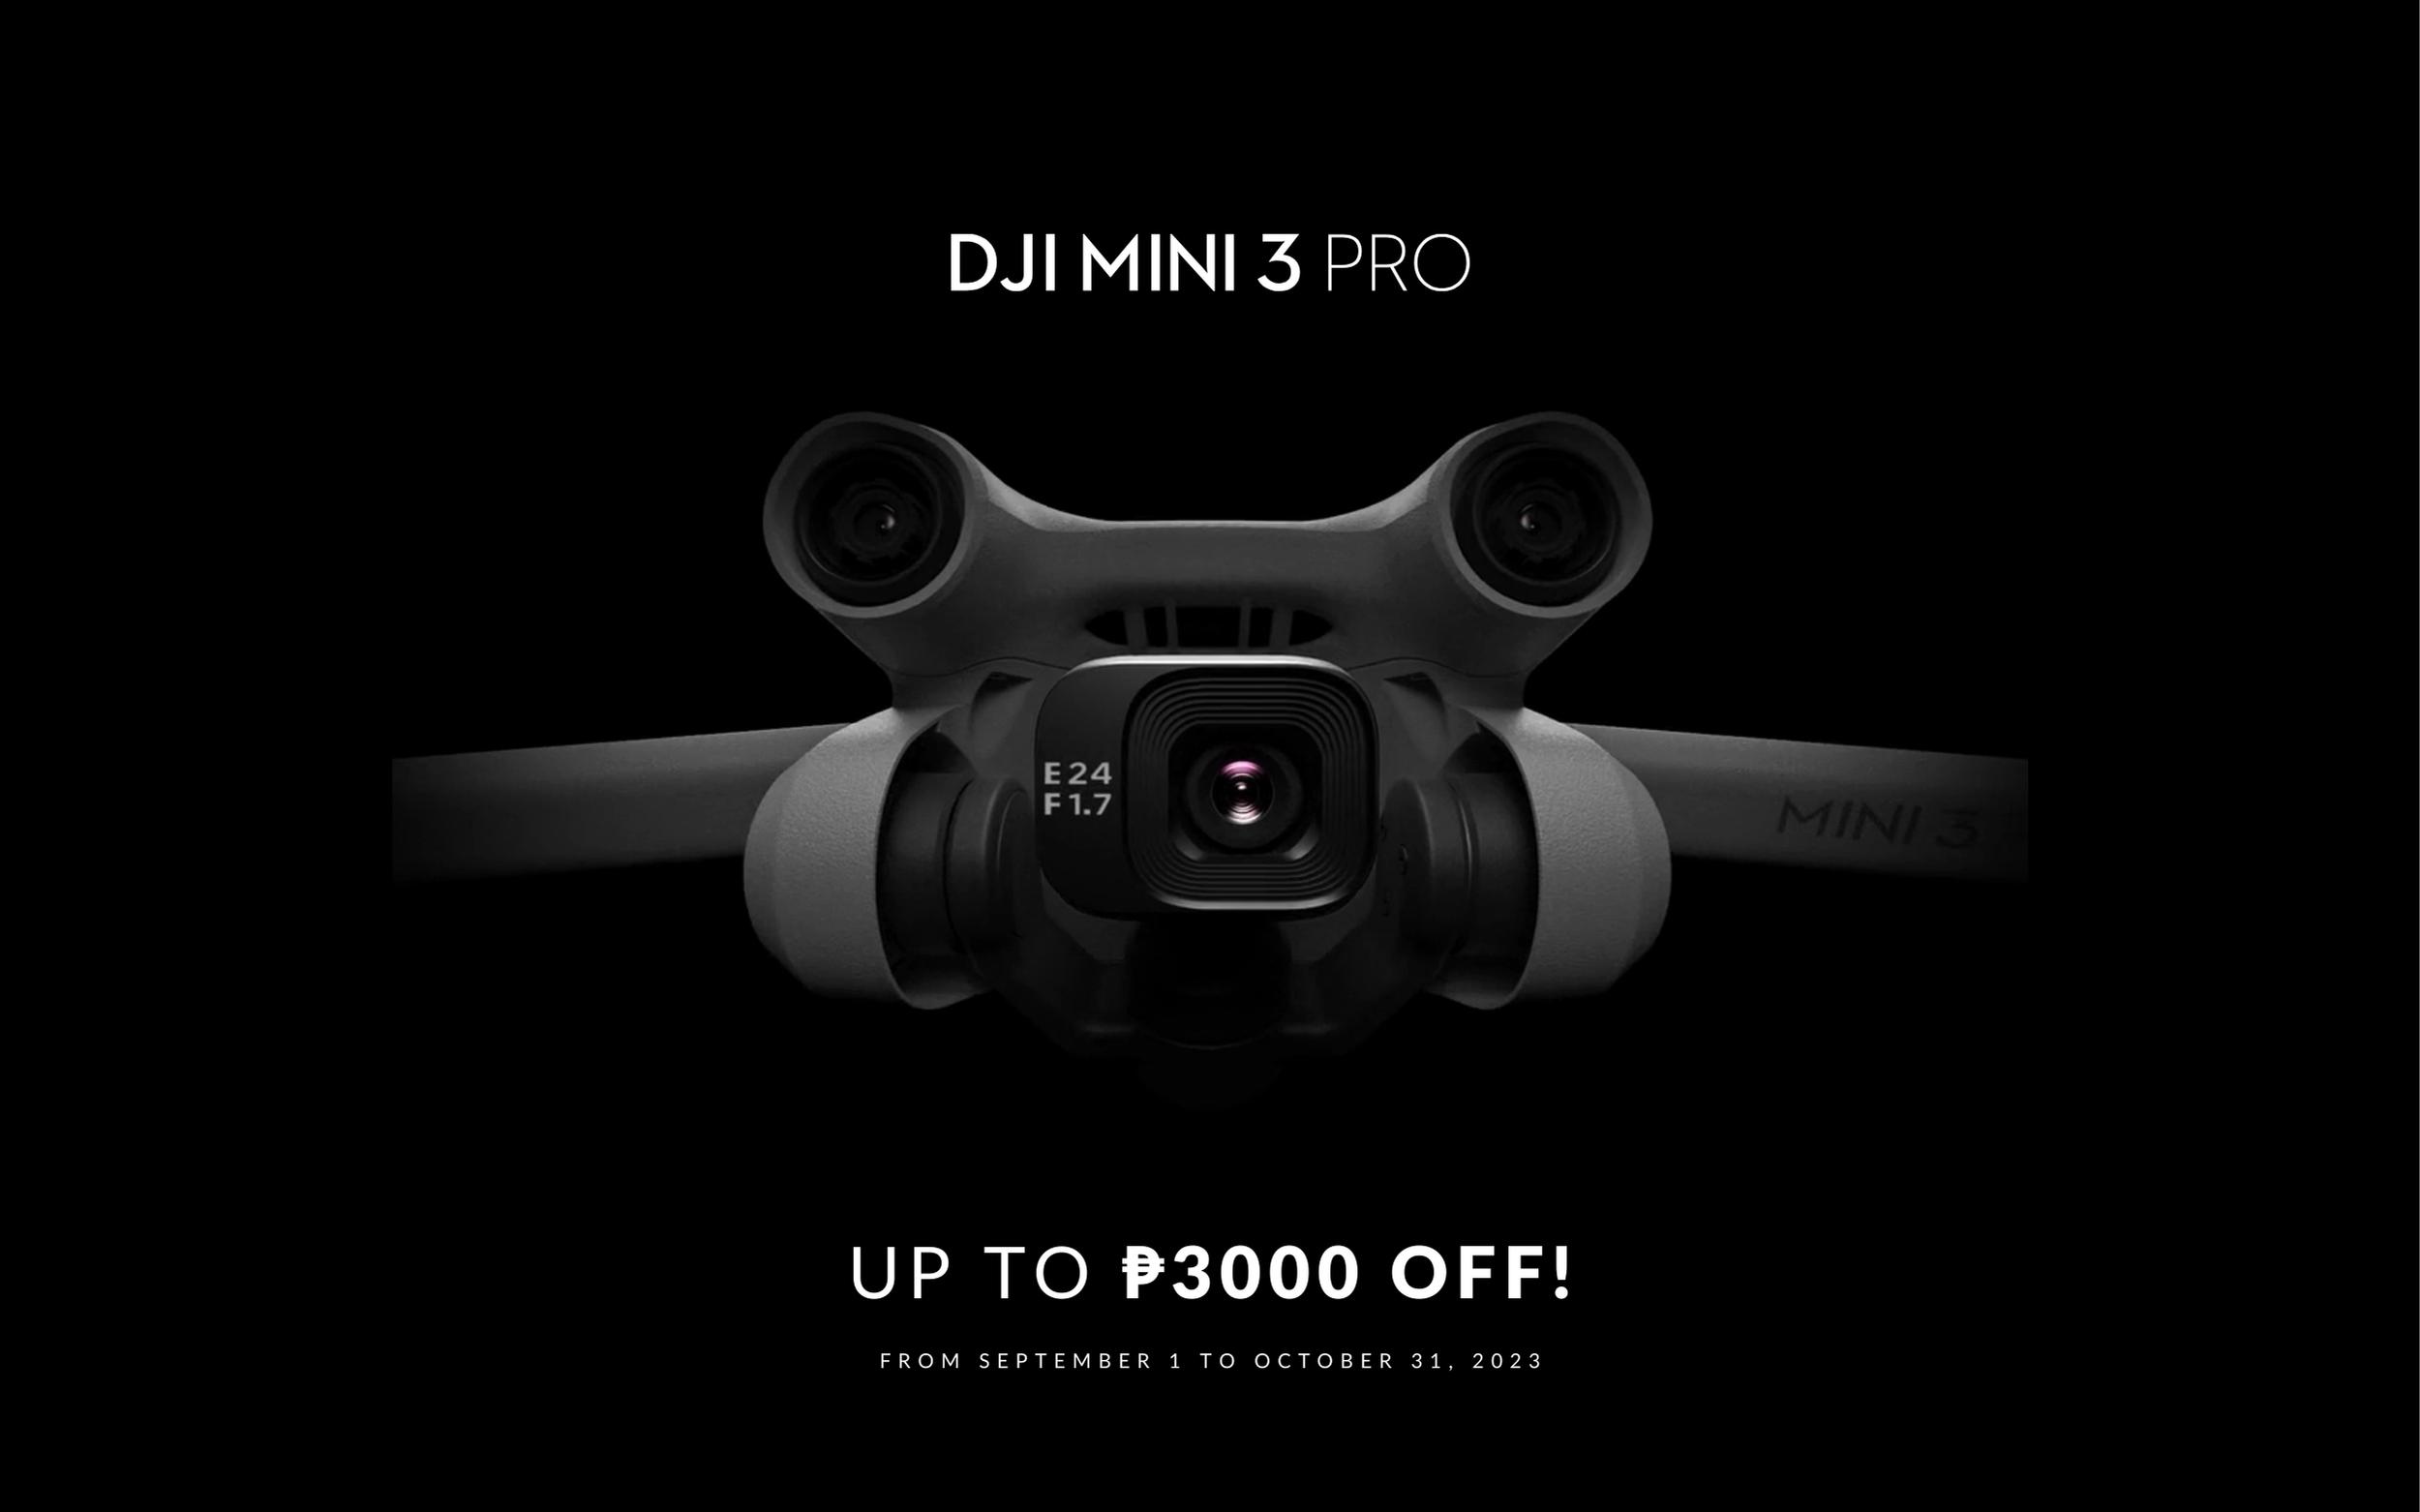 DJI - Introducing DJI Mini 3 Pro 